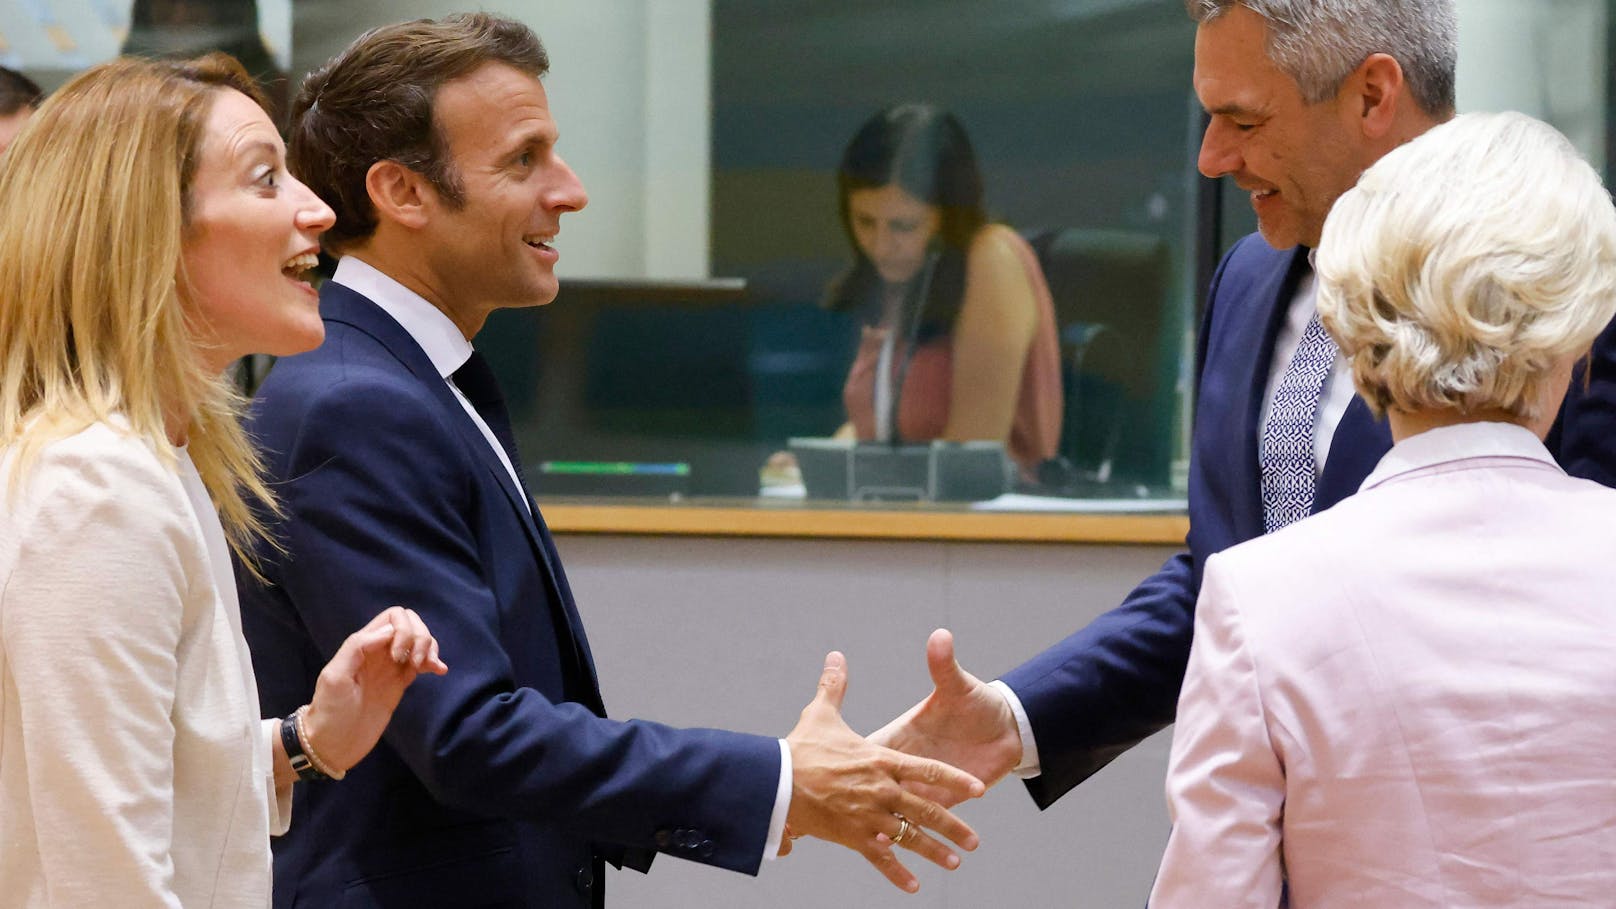 Am 23. Juni 2022 – volle Fingerspannung vor dem Handshake mit Macron beim EU-Westbalkan-Treffen in Brüssel.